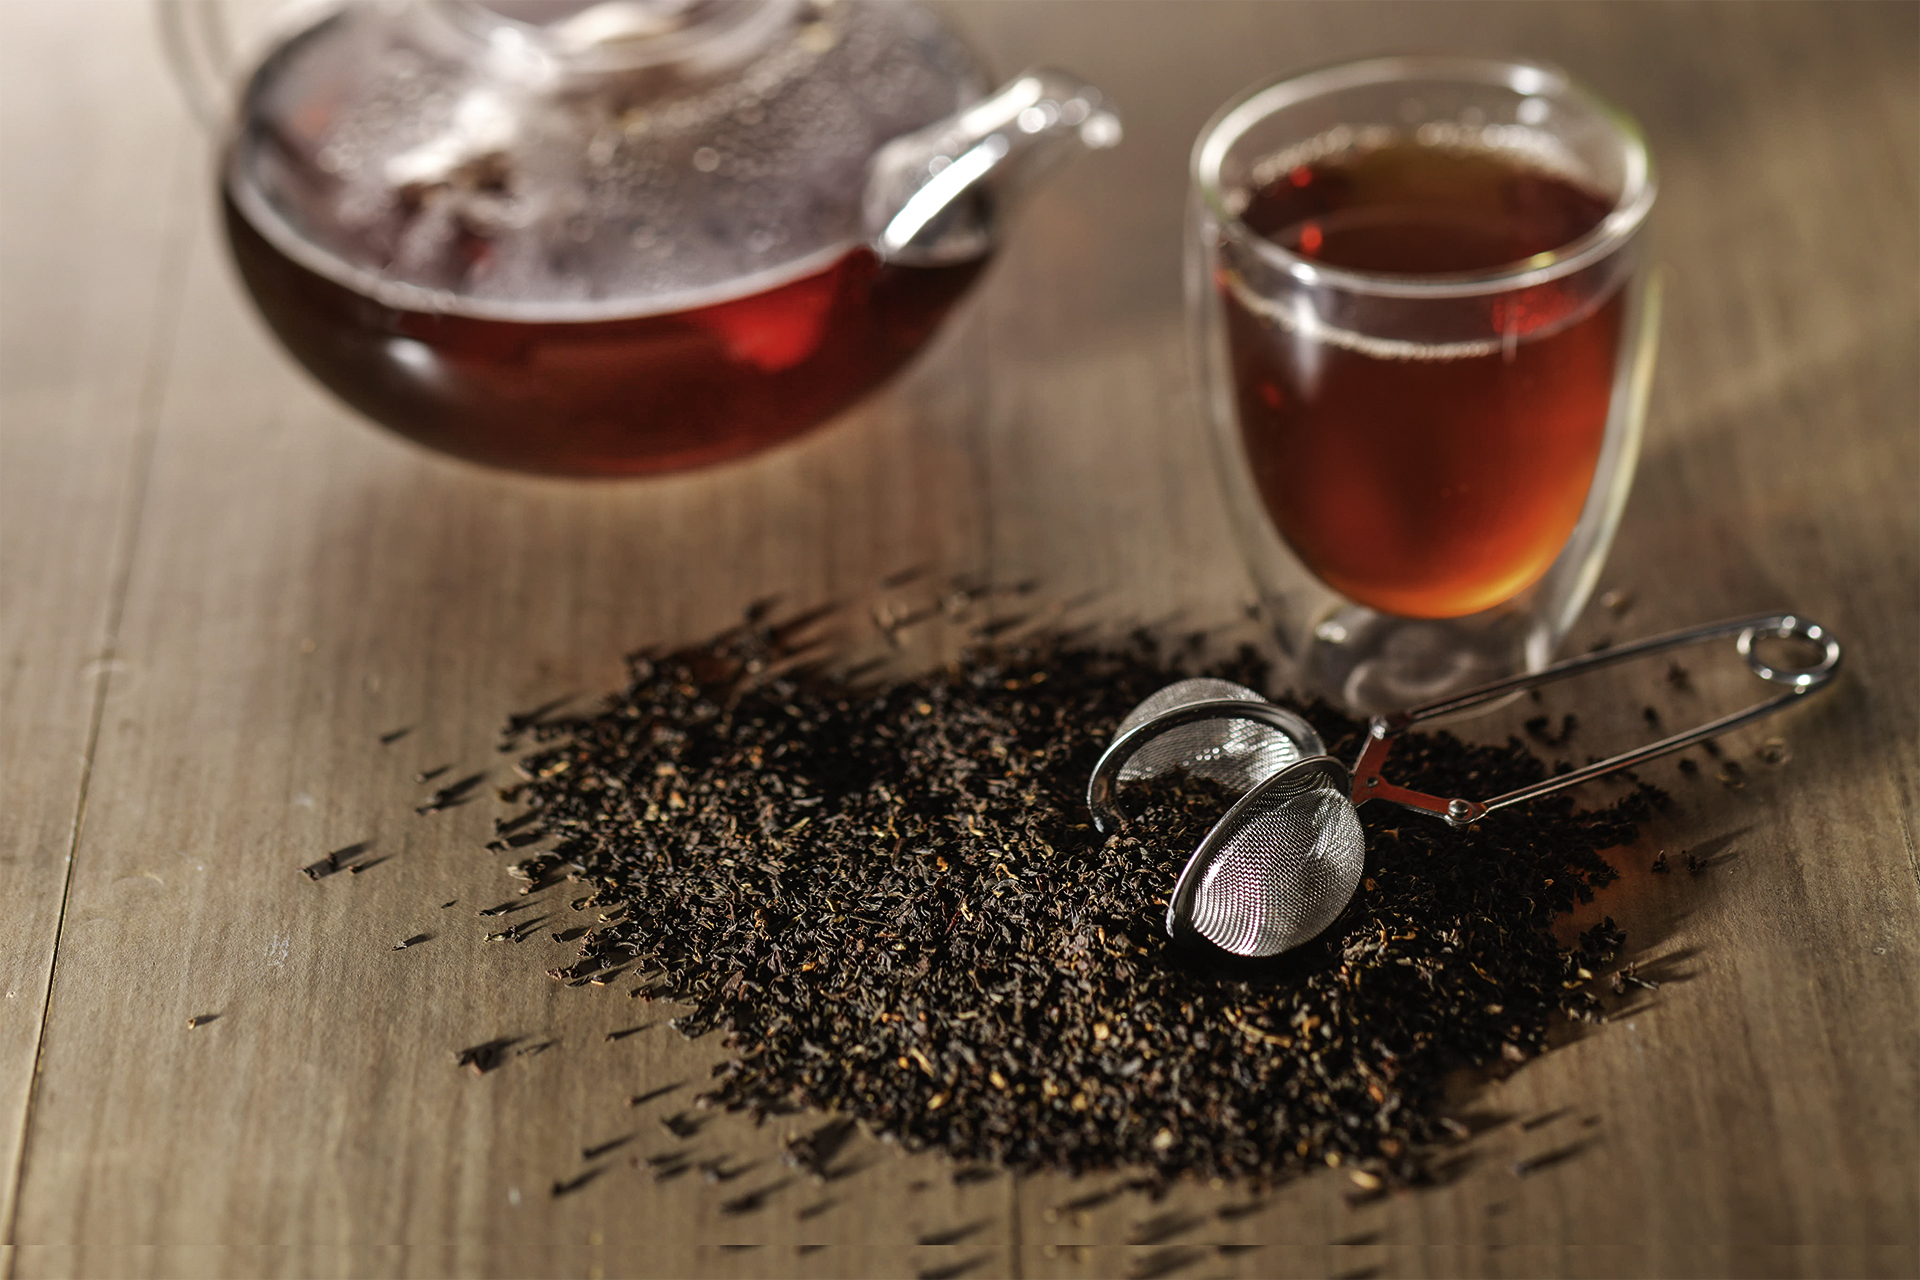 Creano "ErblühTee" Geschenkset Weißer Tee und Glaskanne, 0,5 l